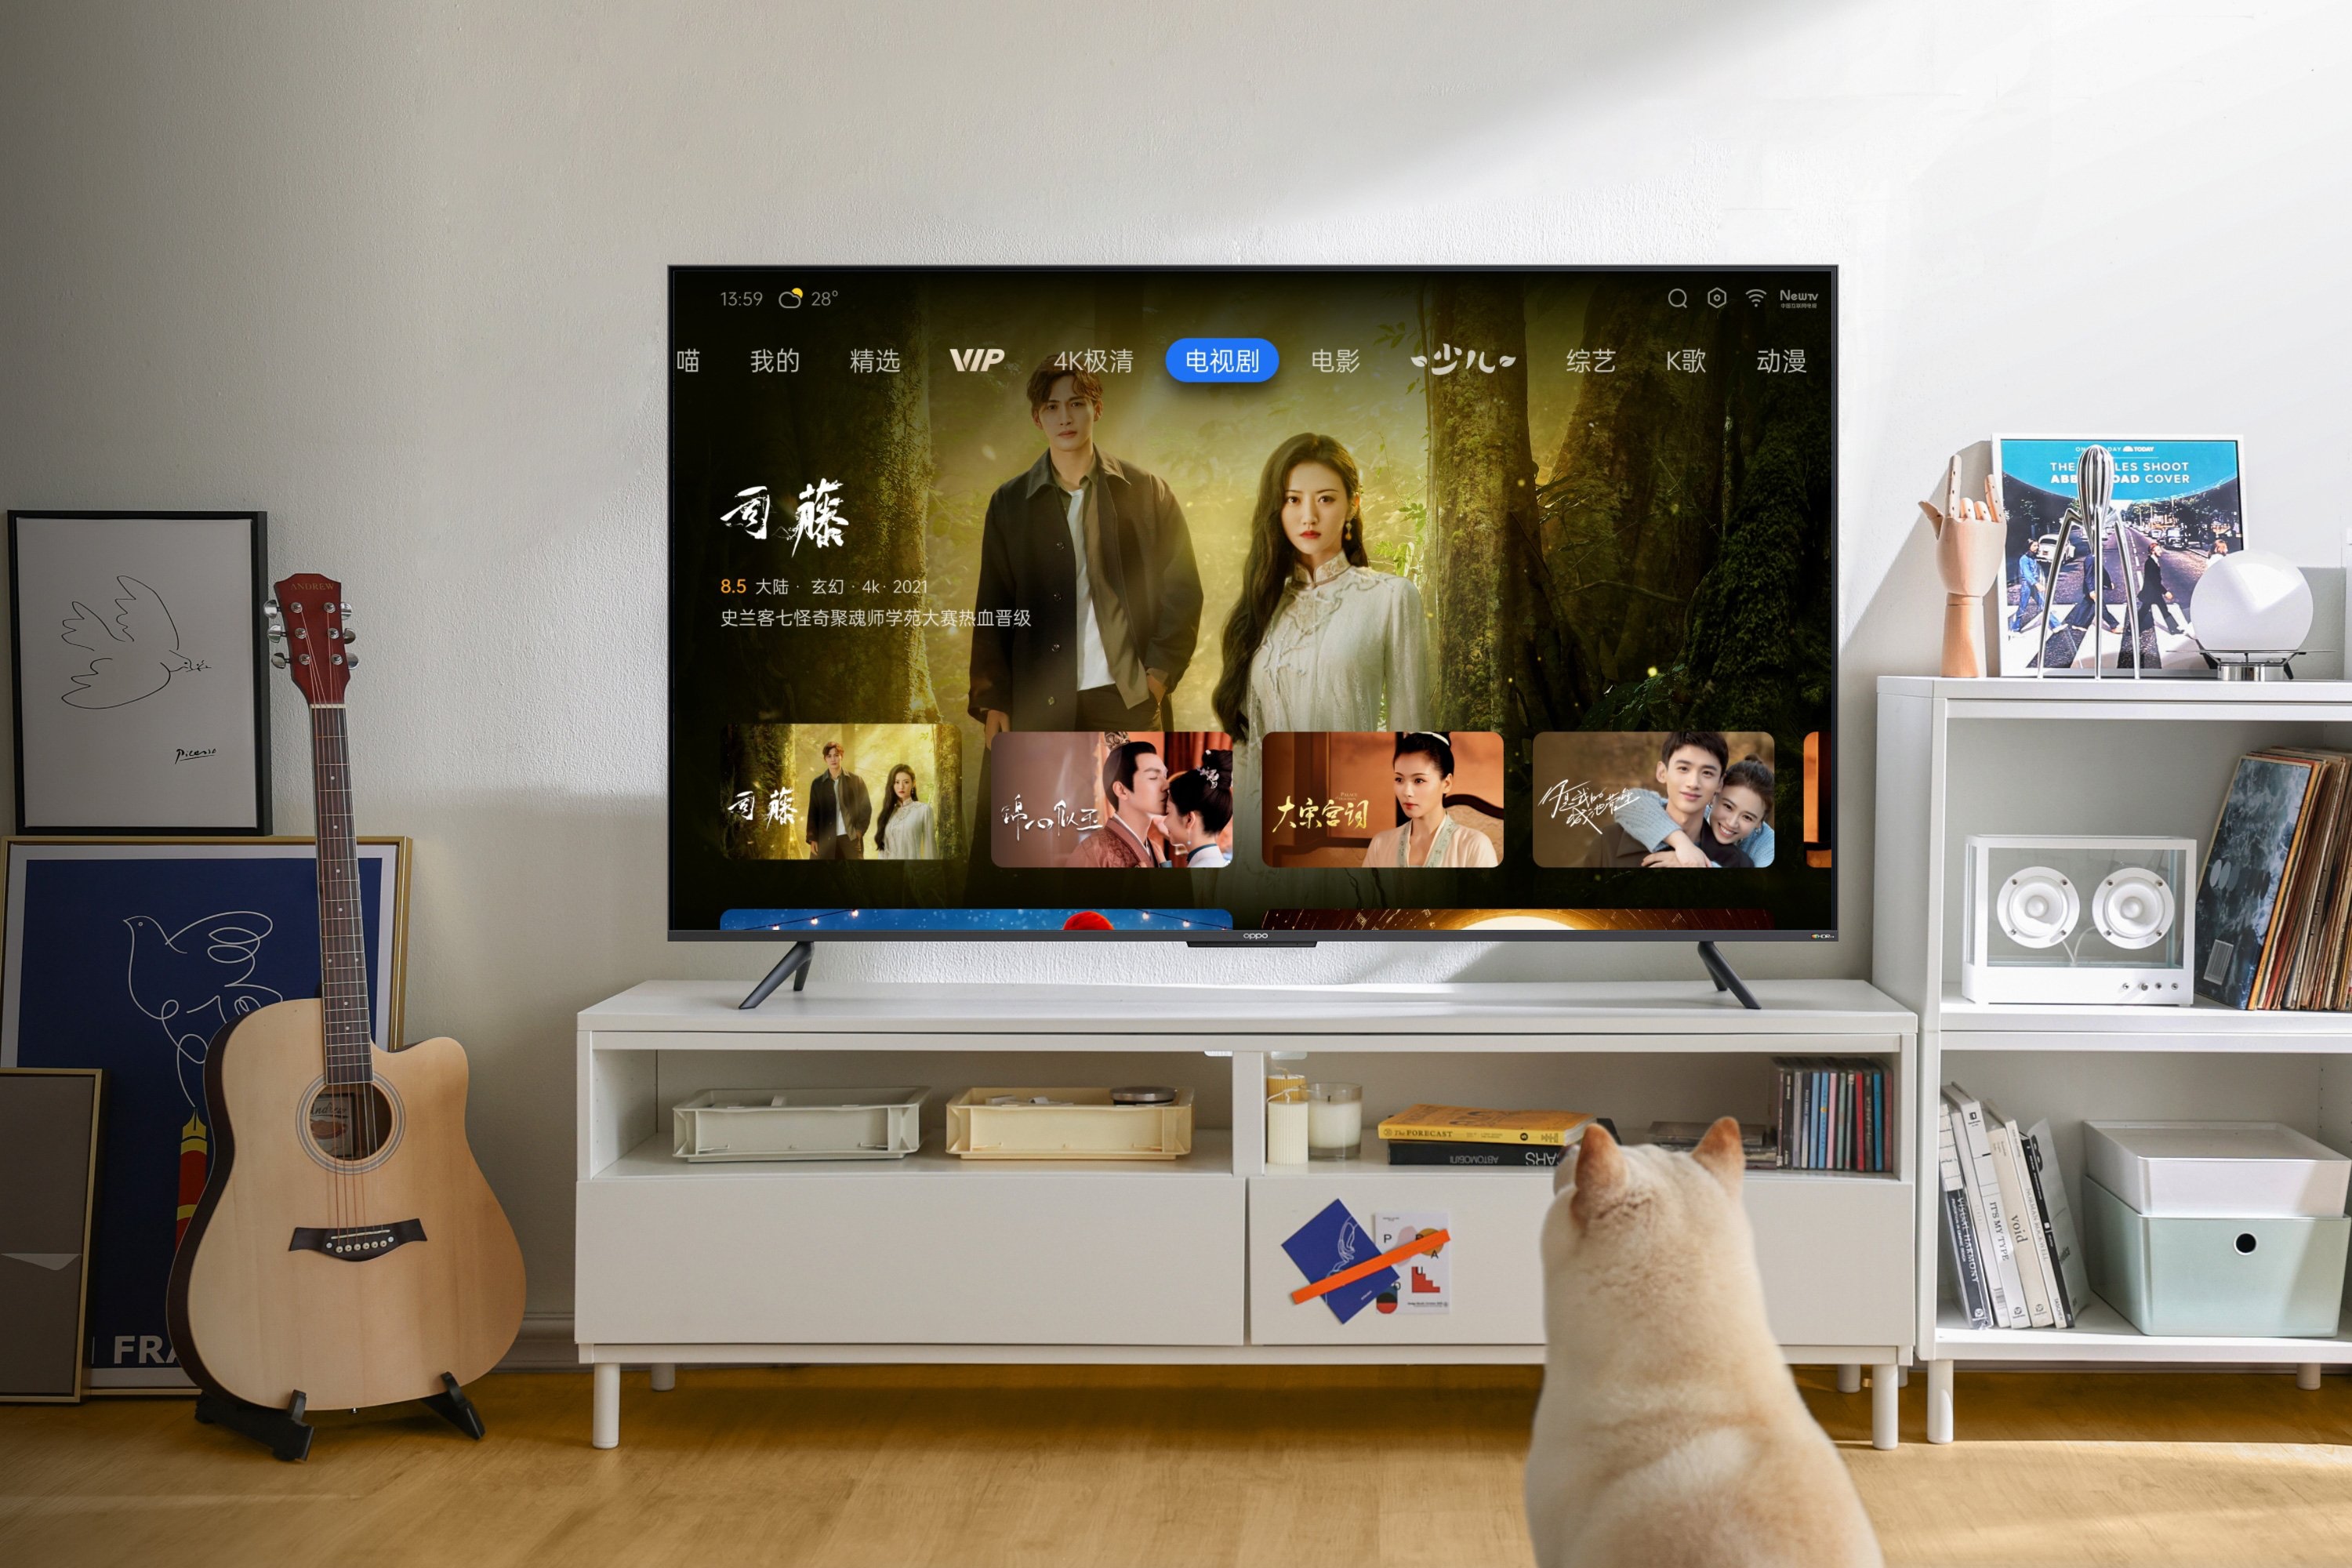 OPPO comienza a vender Smart TV 4K K9x de 65 pulgadas por $ 335